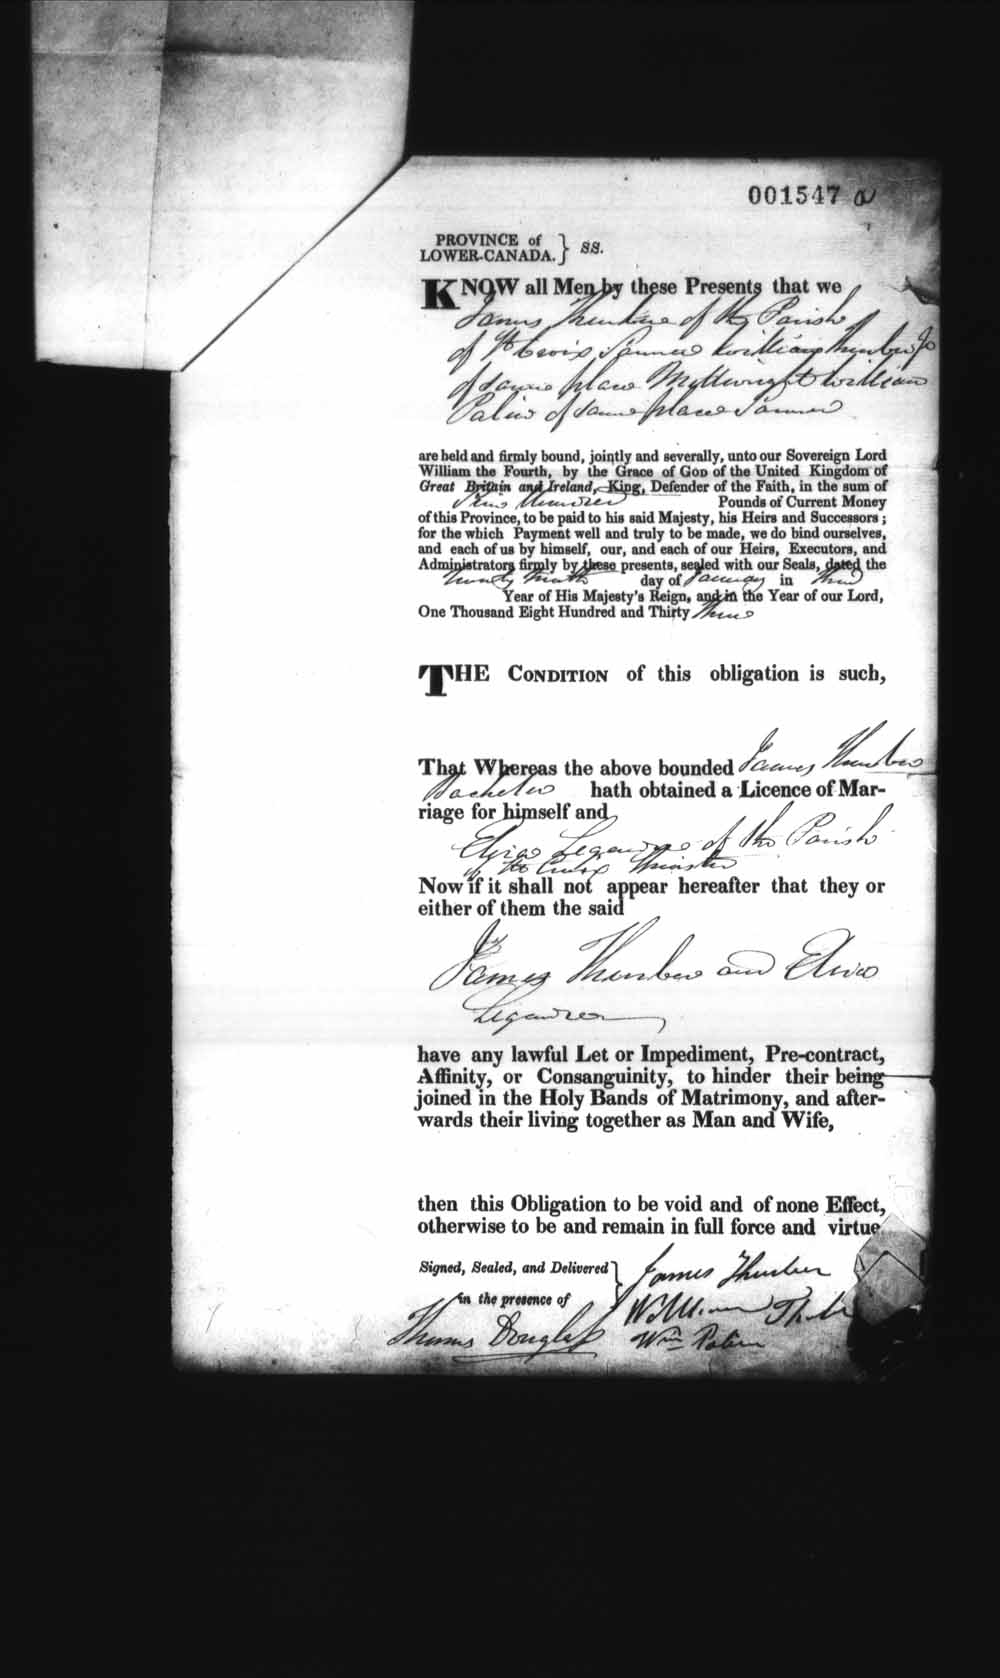 Page numérisé de Cautionnements de mariages pour le Haut-Canada et le Bas-Canada (1779-1865) pour l'image numéro: e008237851